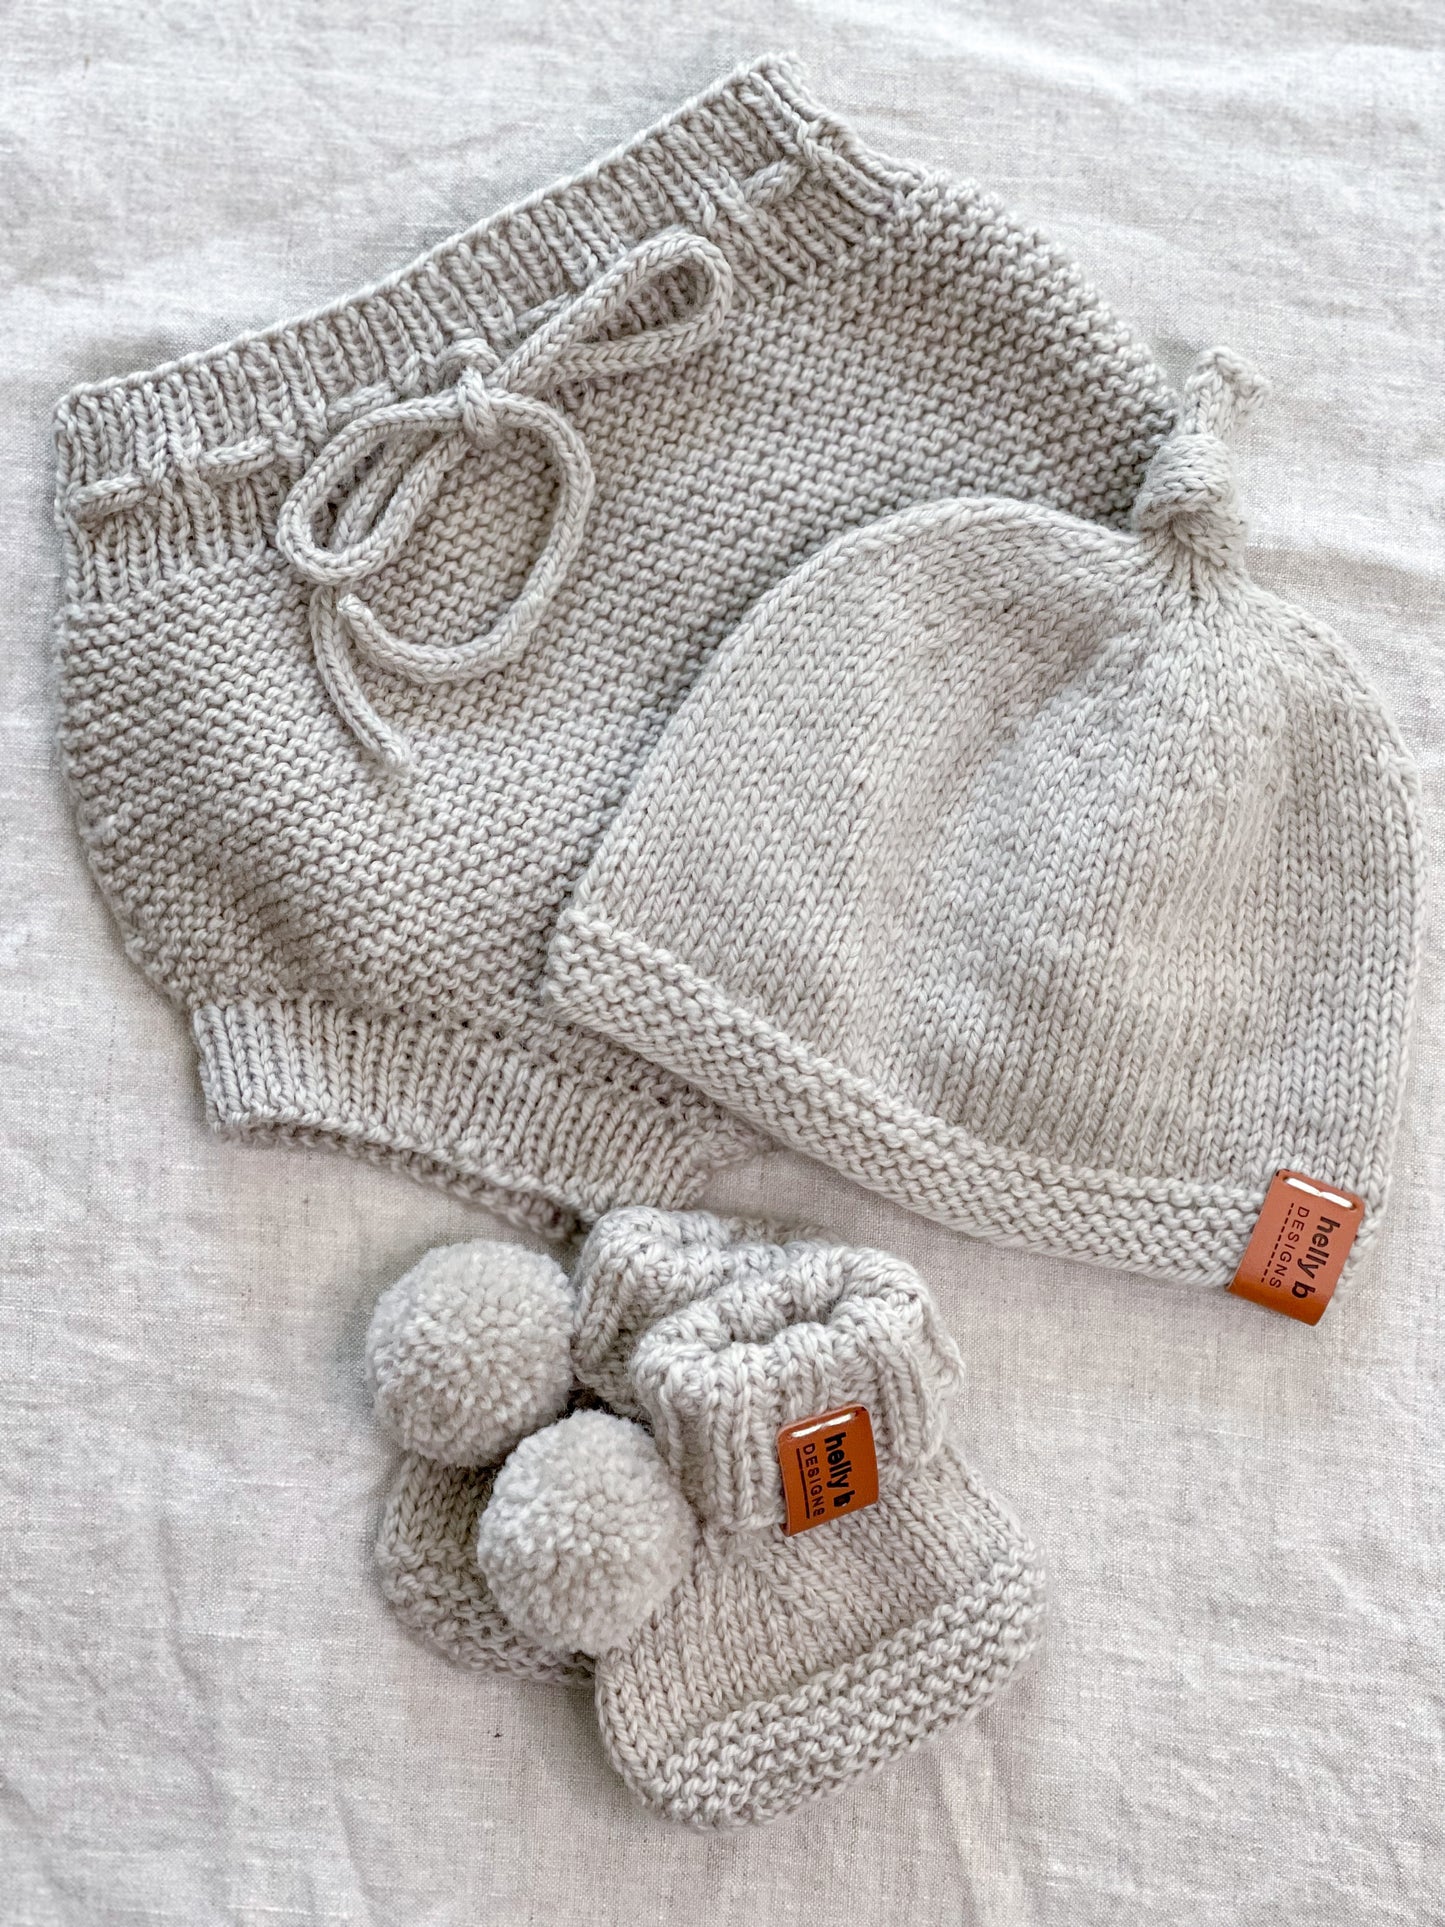 Deluxe Merino Wool Hand Knitted Baby Gift Box